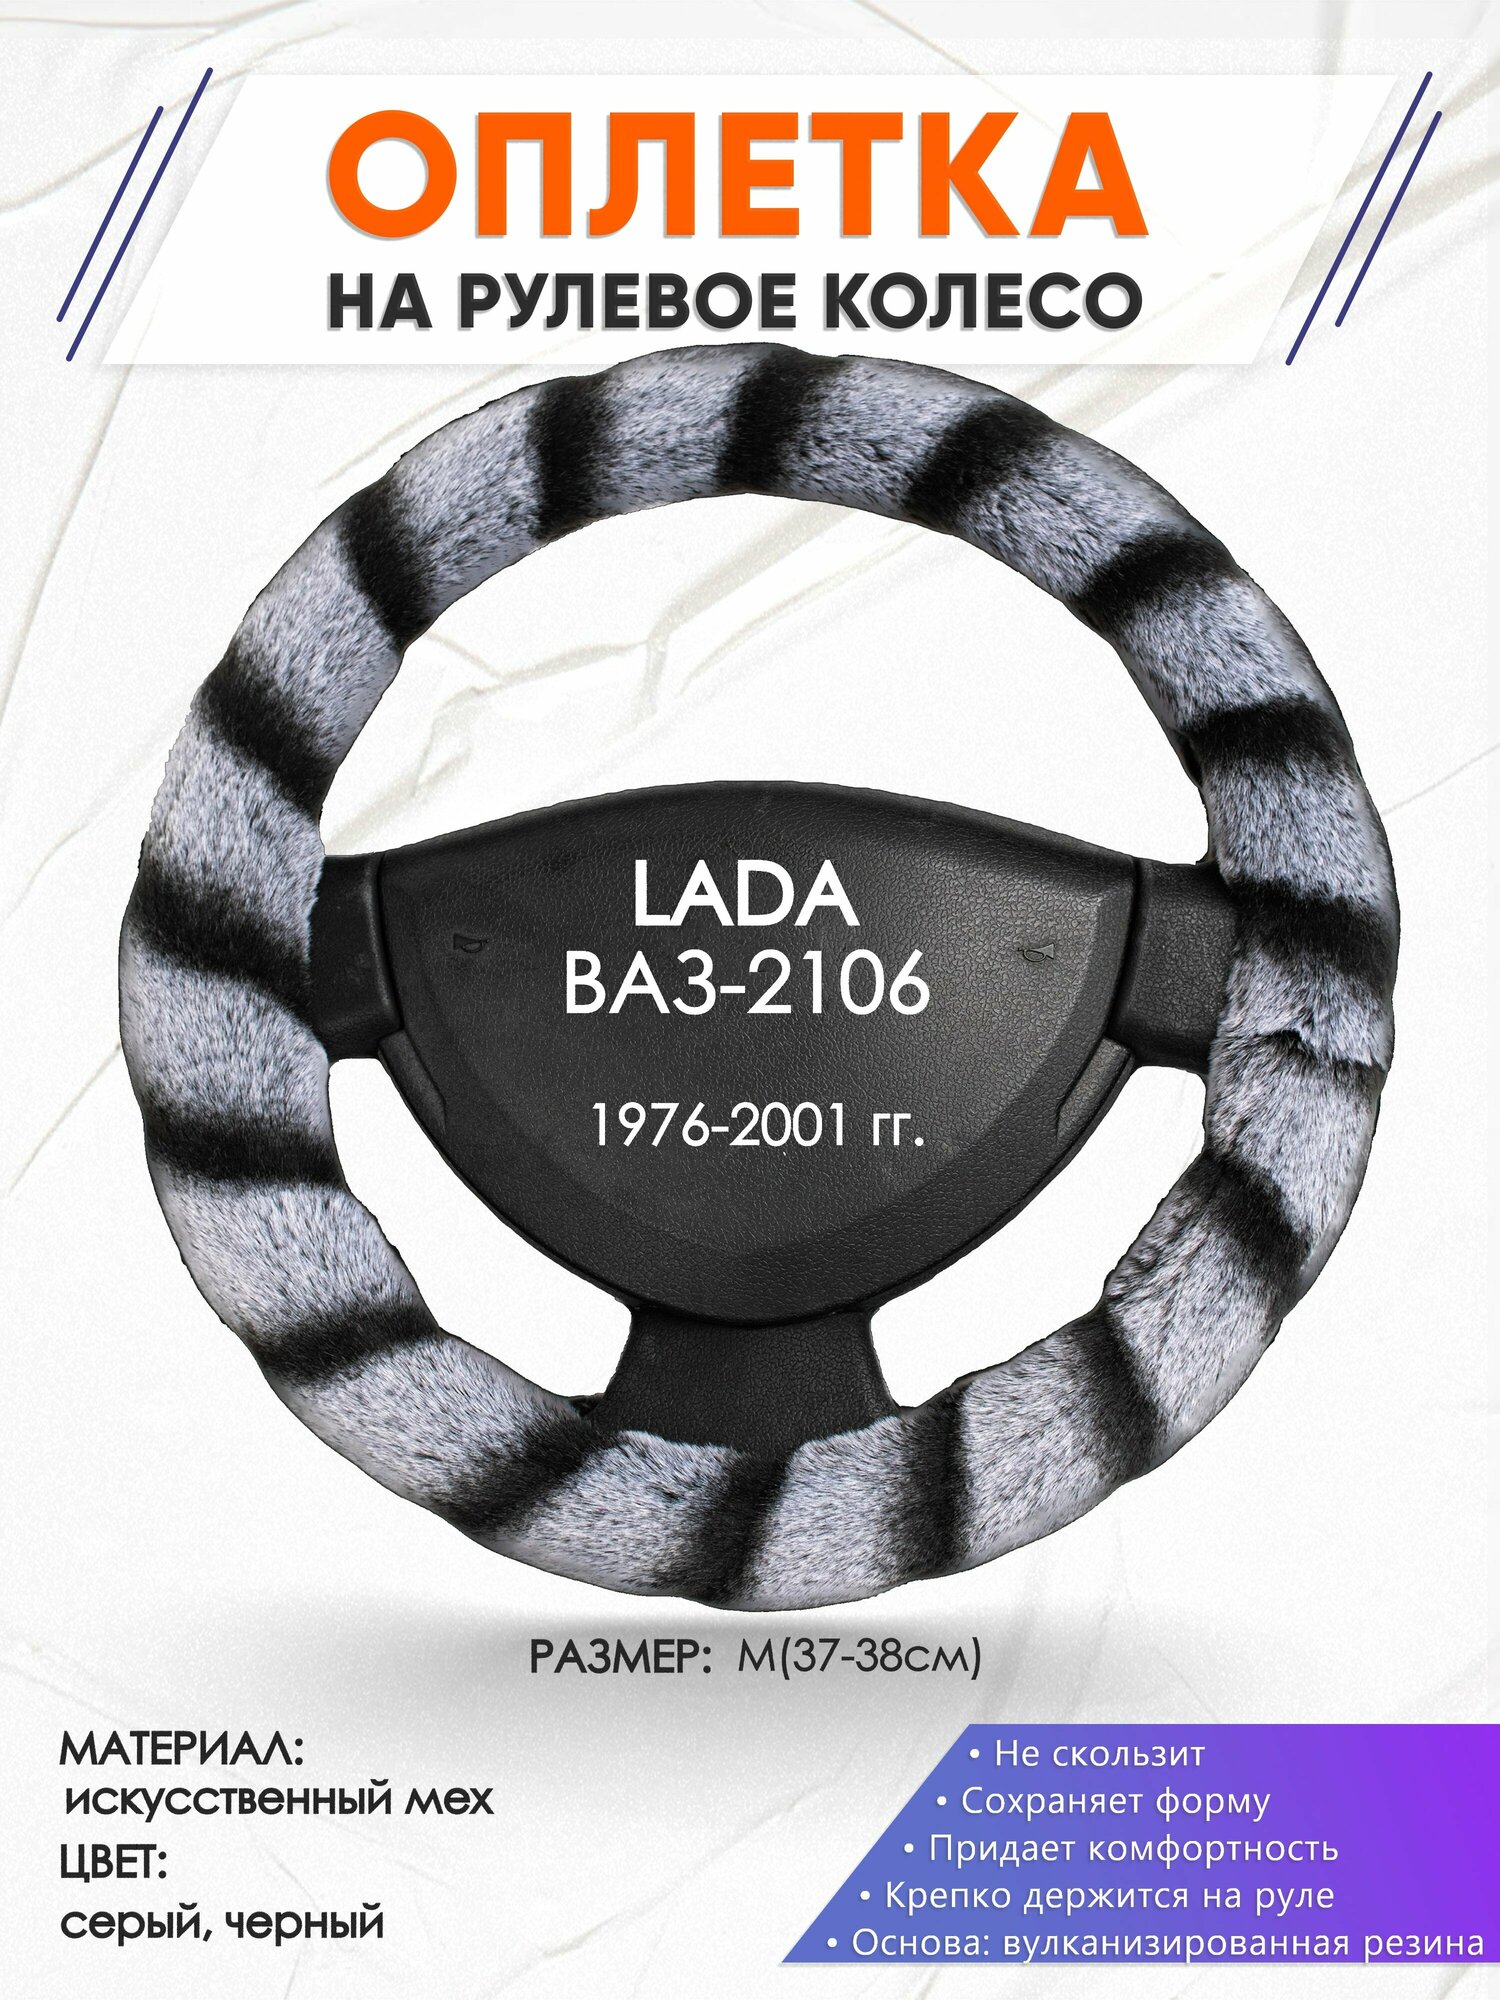 Оплетка наруль для LADA ВАЗ-2106(Лада ВАЗ-2106) 1976-2001 годов выпуска, размер M(37-38см), Искусственный мех 41